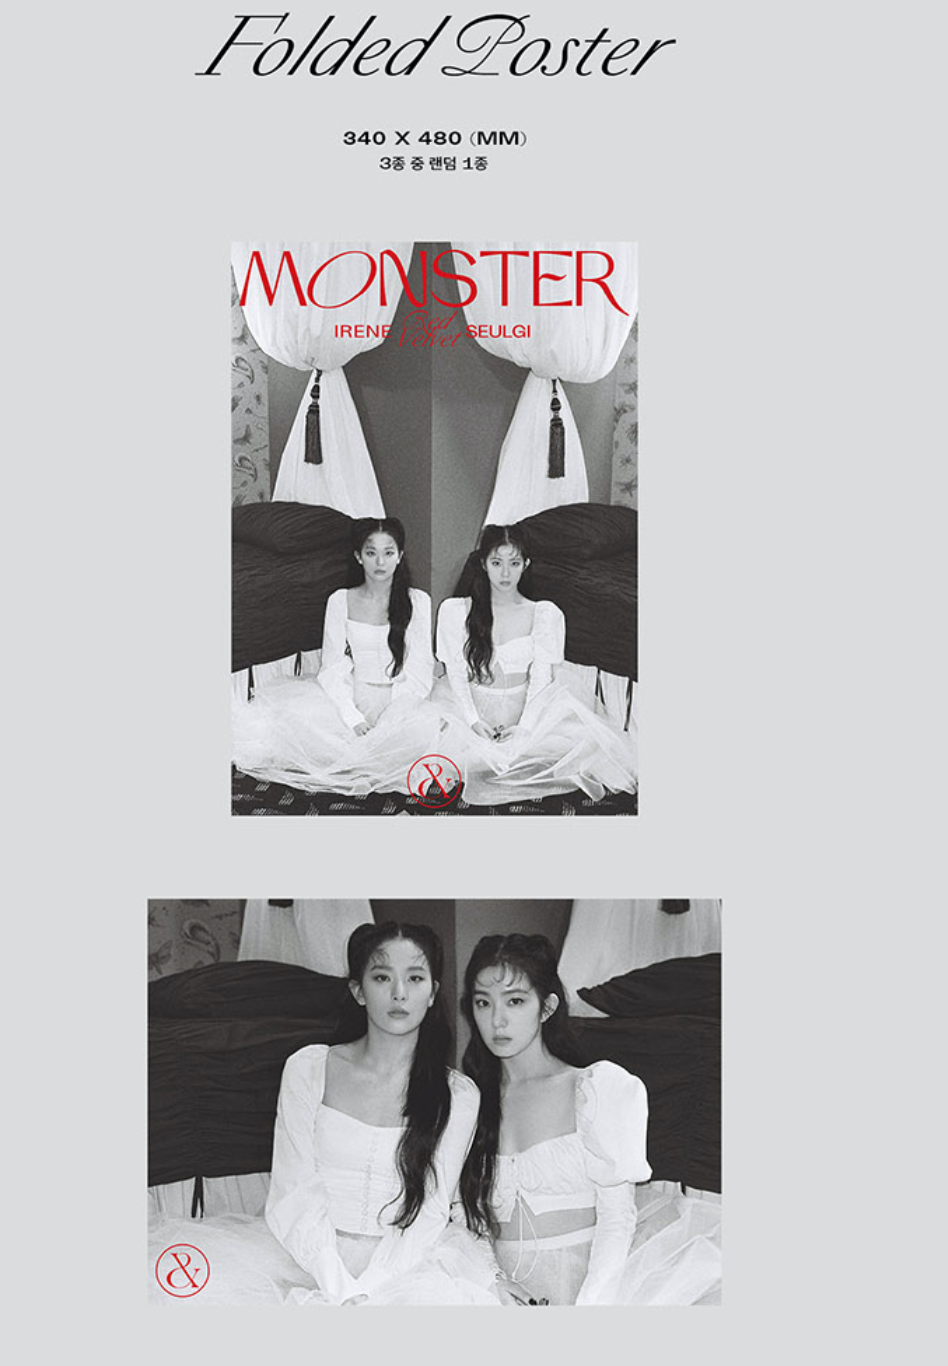 Irene & Seulgi (Red Velvet) 1st Mini Album: Monster [Base Note Ver.]